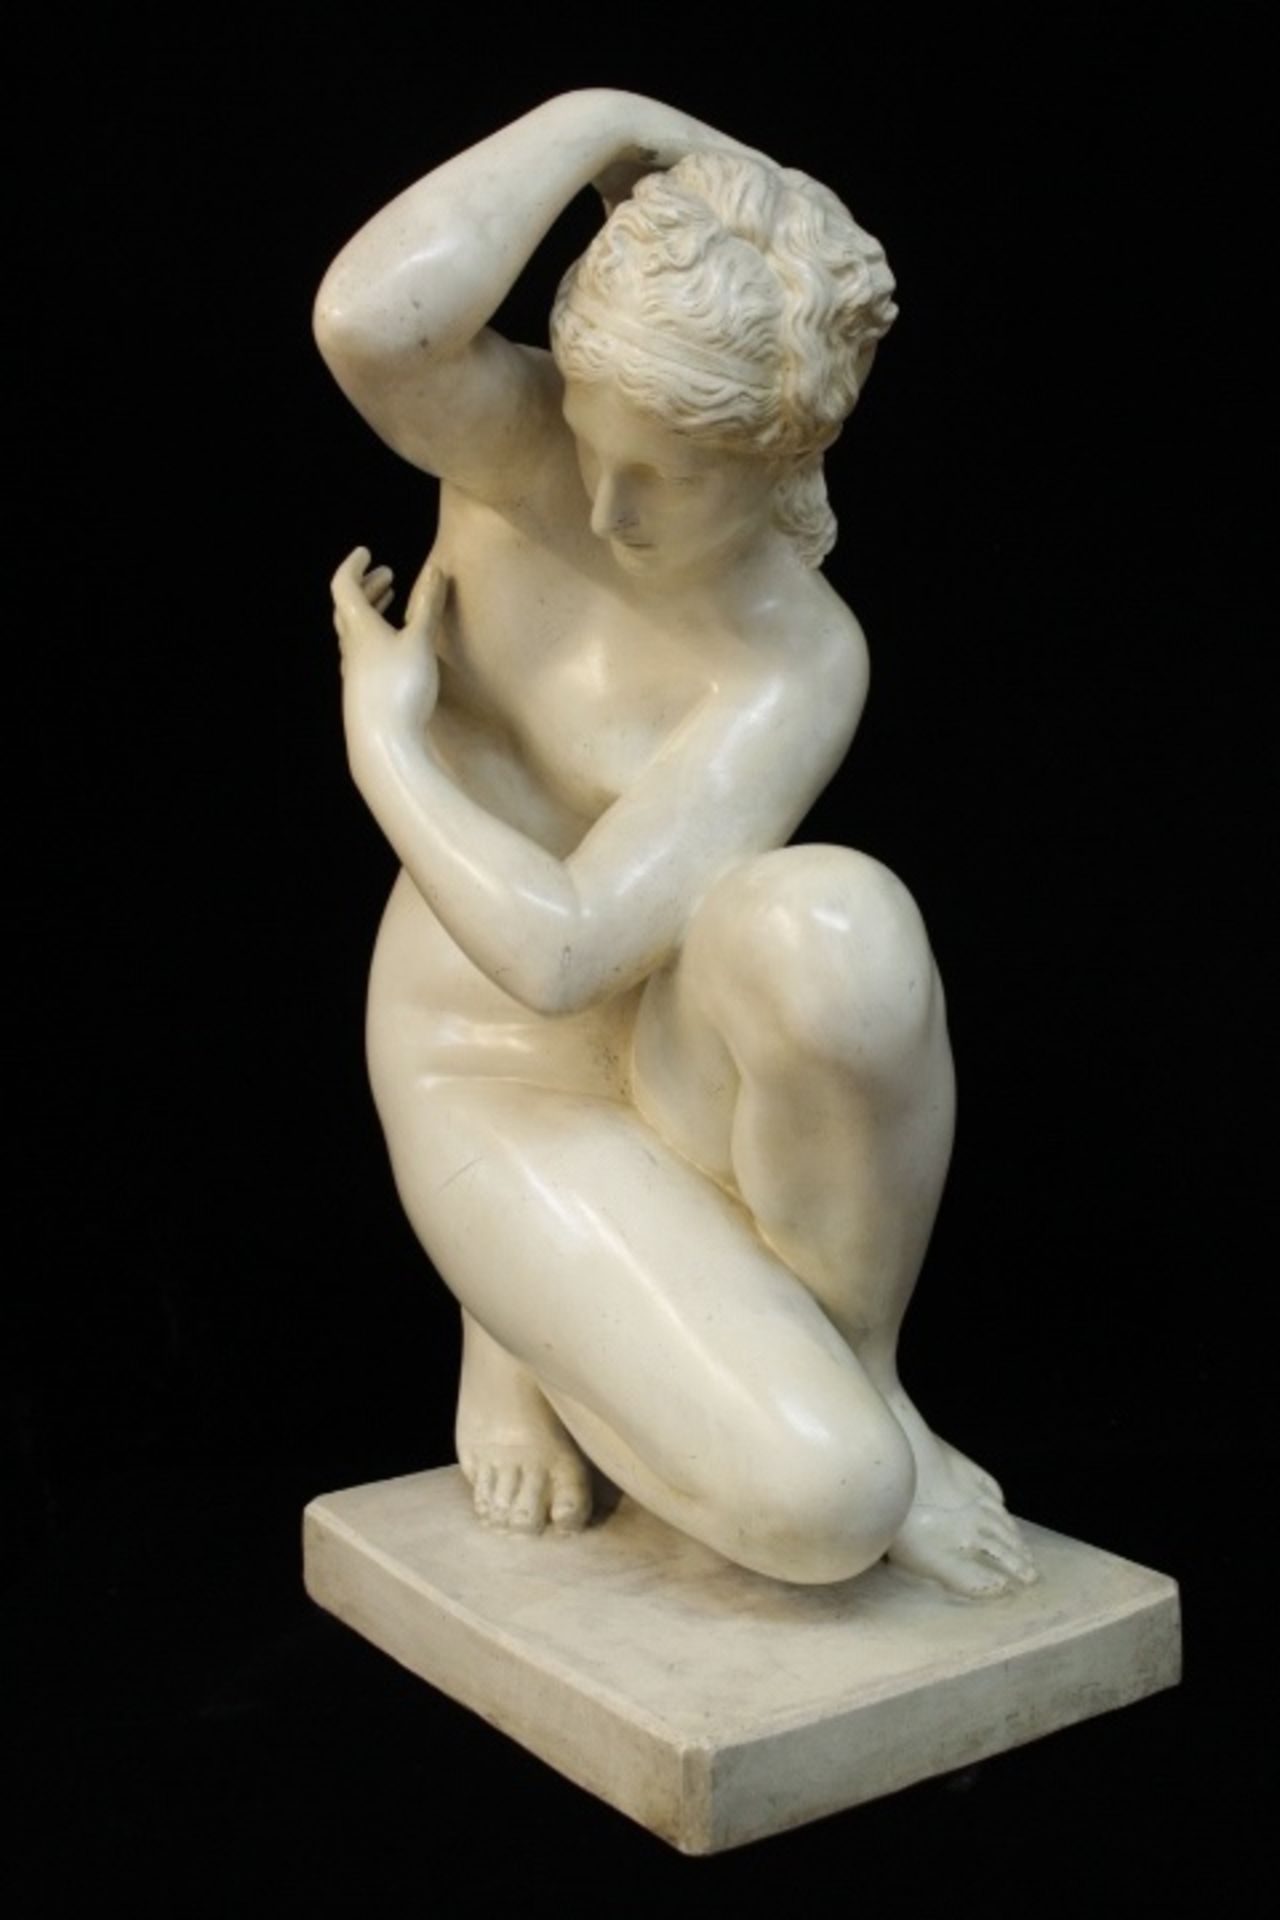 Mädchen Akt Skulptur Knieende « ungemarkt sehr dekorativ wohl Gips H:73xm wohl um 1900 - Image 2 of 3